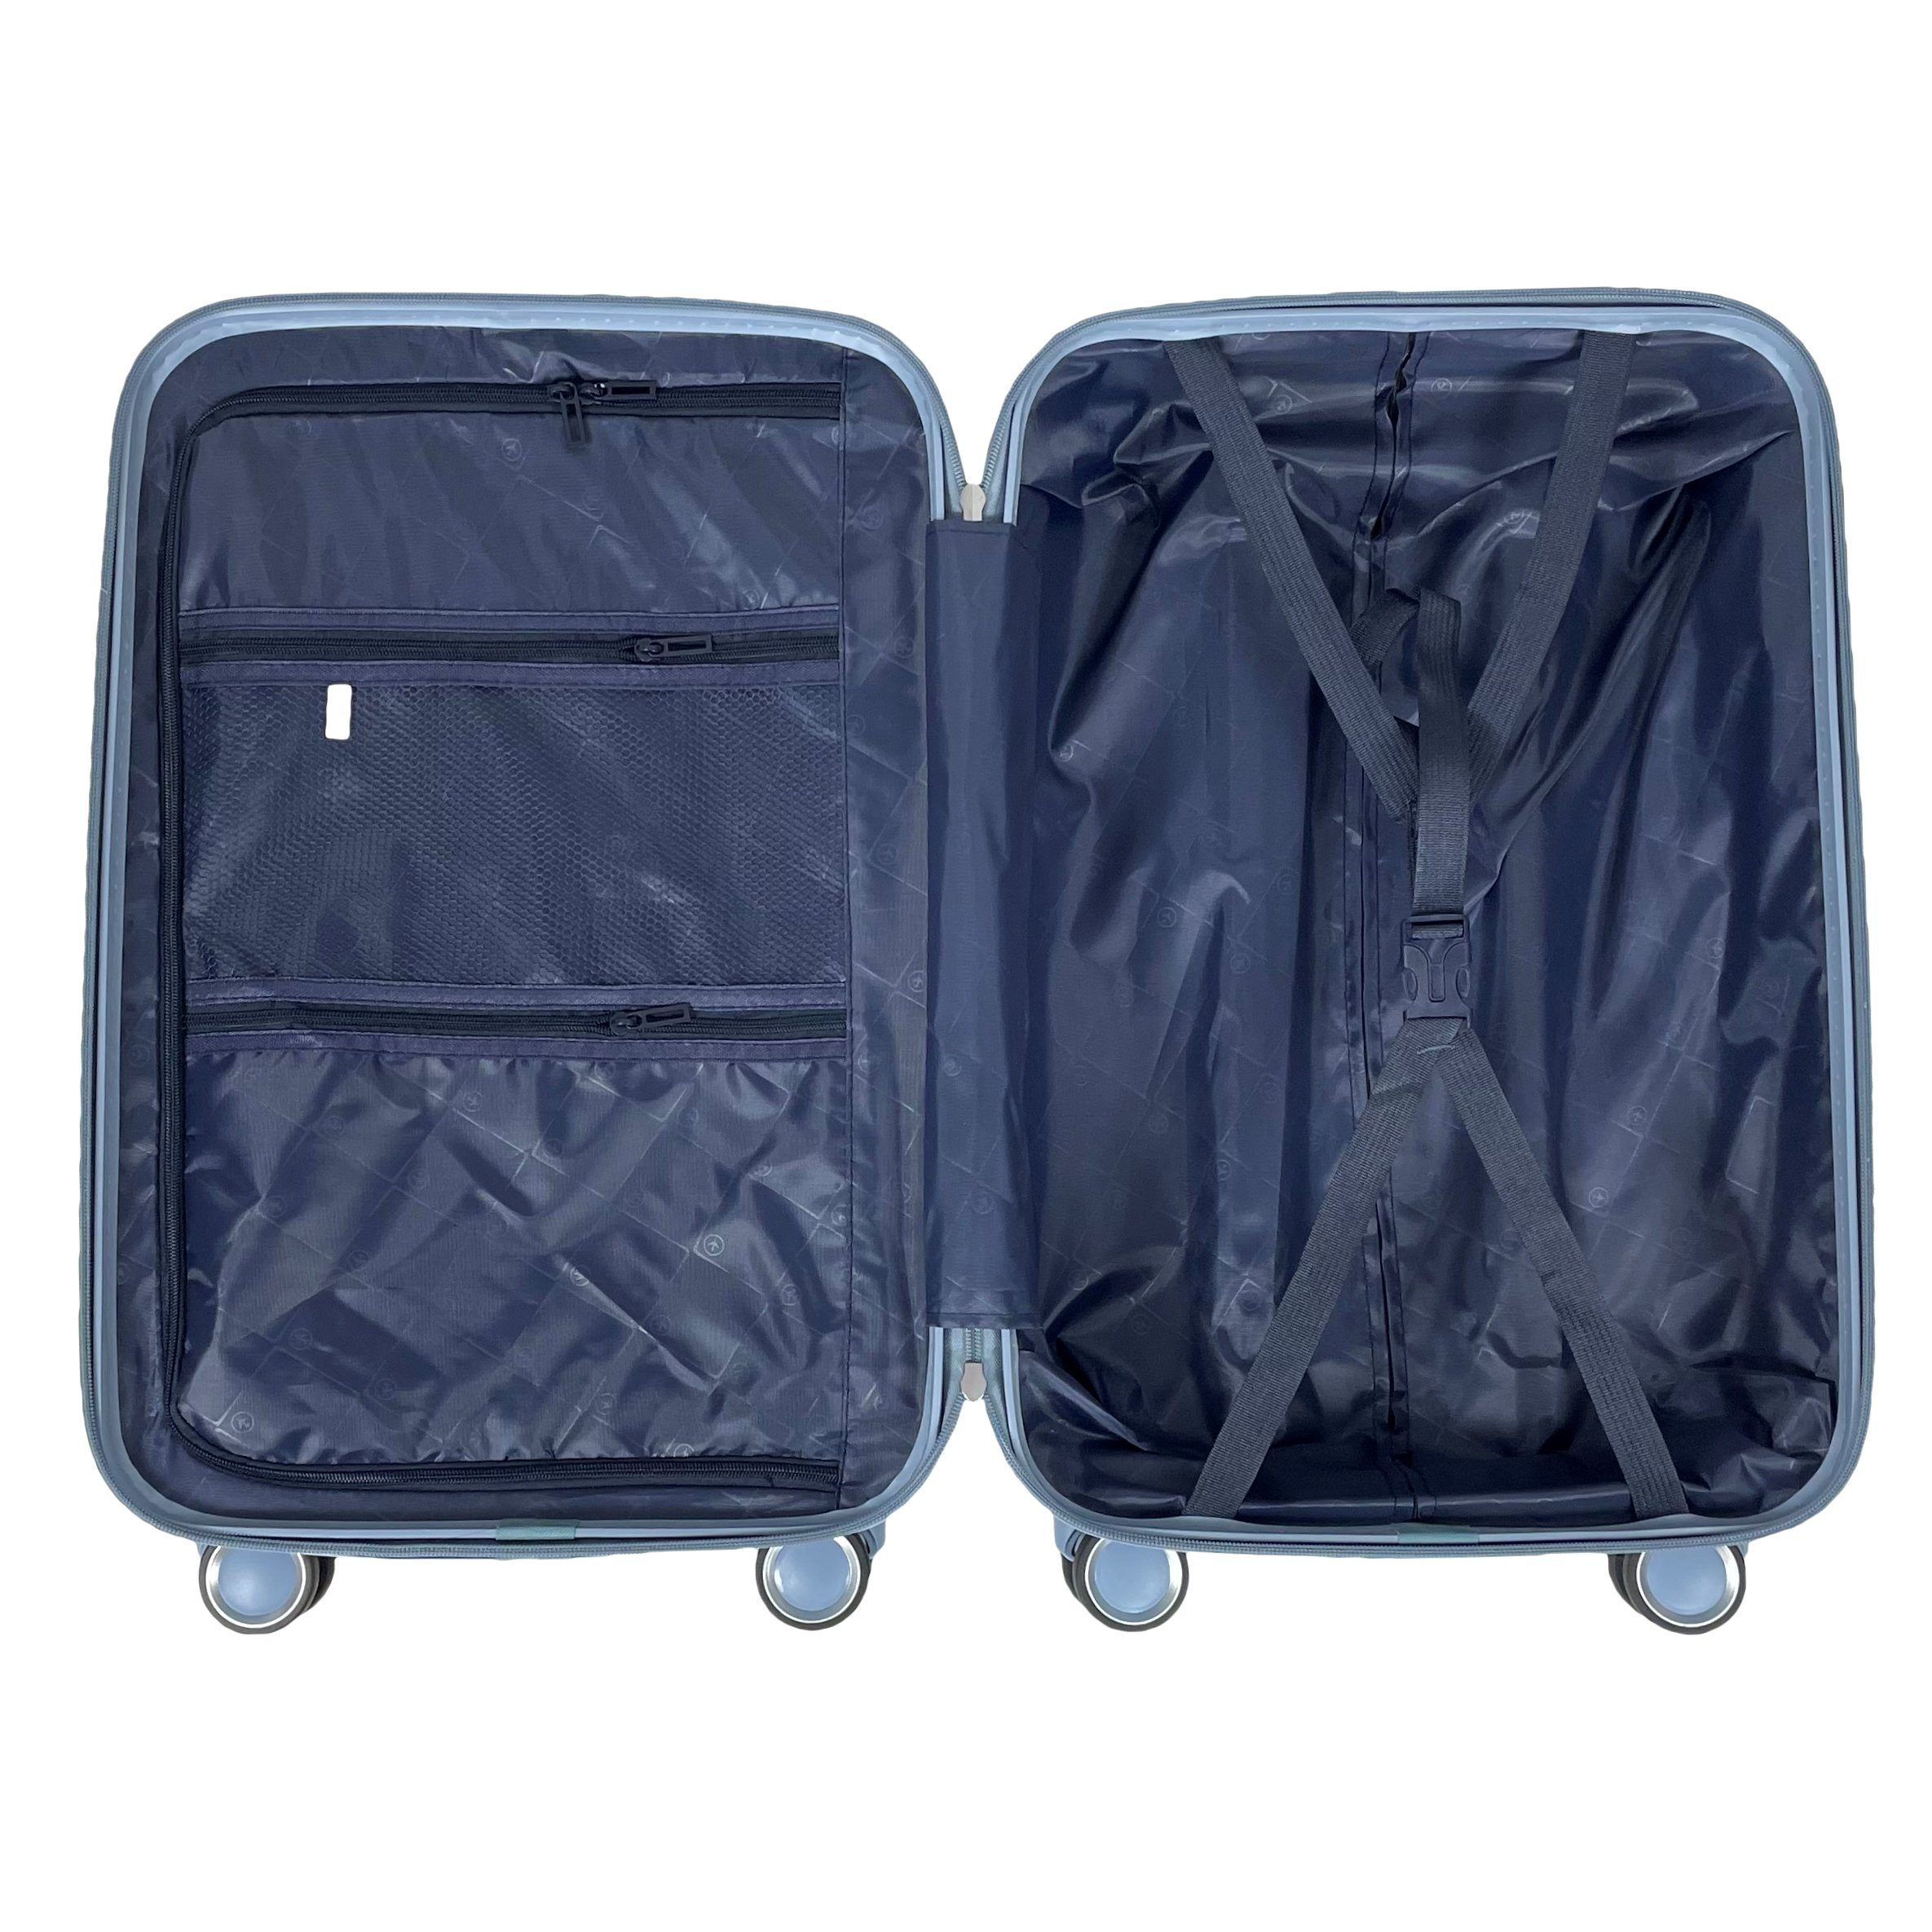 Koffer Tasche Grau-Blau Set Reisekoffer Koffer M/L/XL/XXL/4er Reisetasche Handgepäck MTB